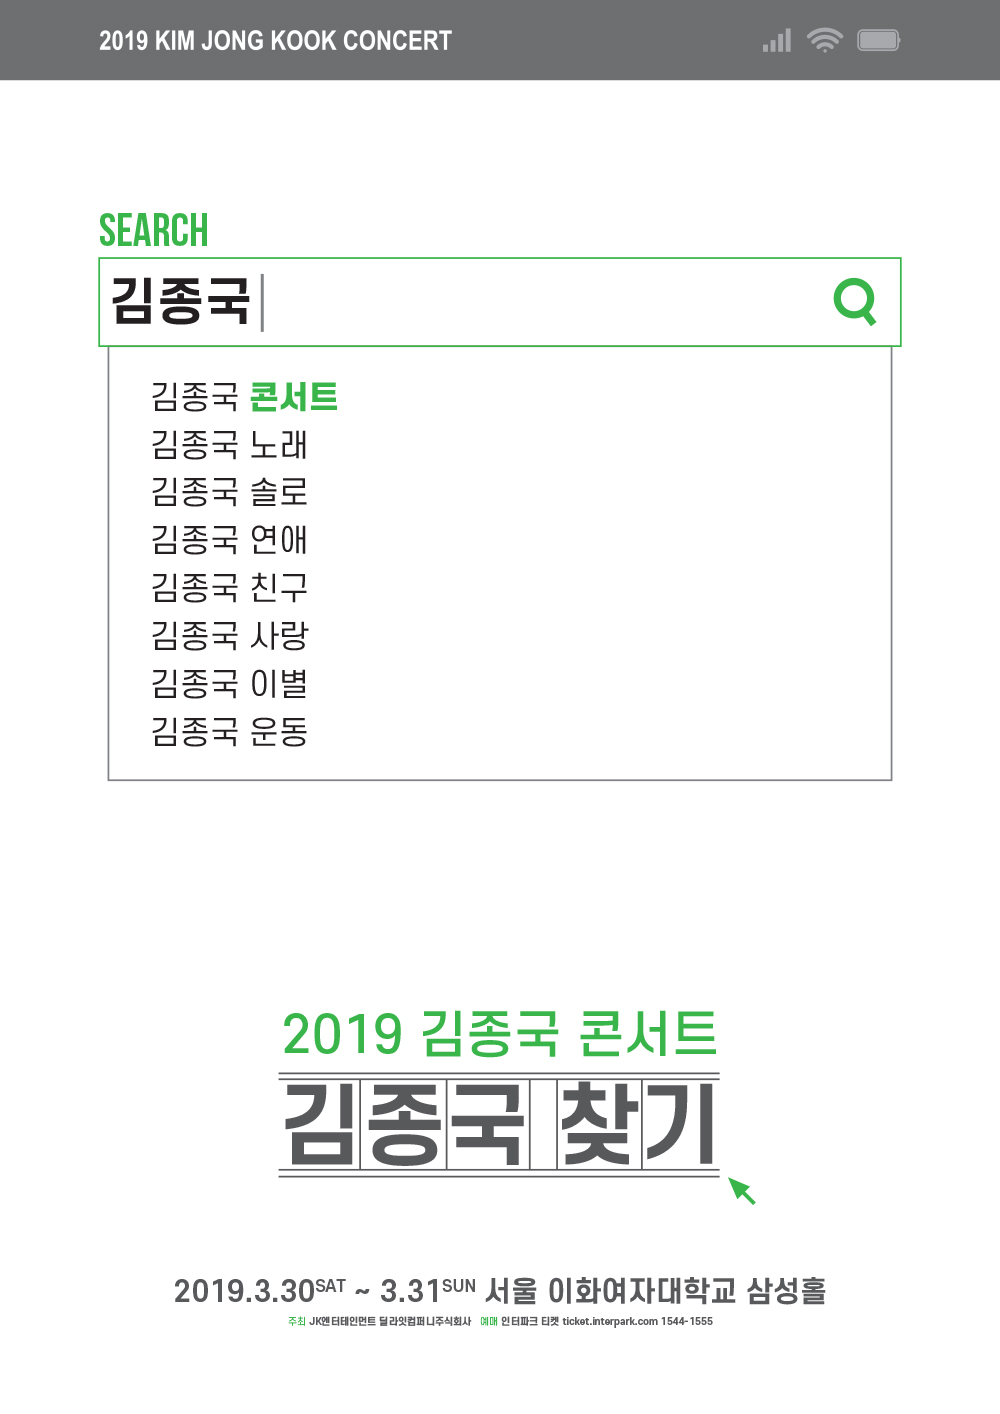 (0221) 2019 김종국 콘서트 _김종국찾기_ 포스터.jpg